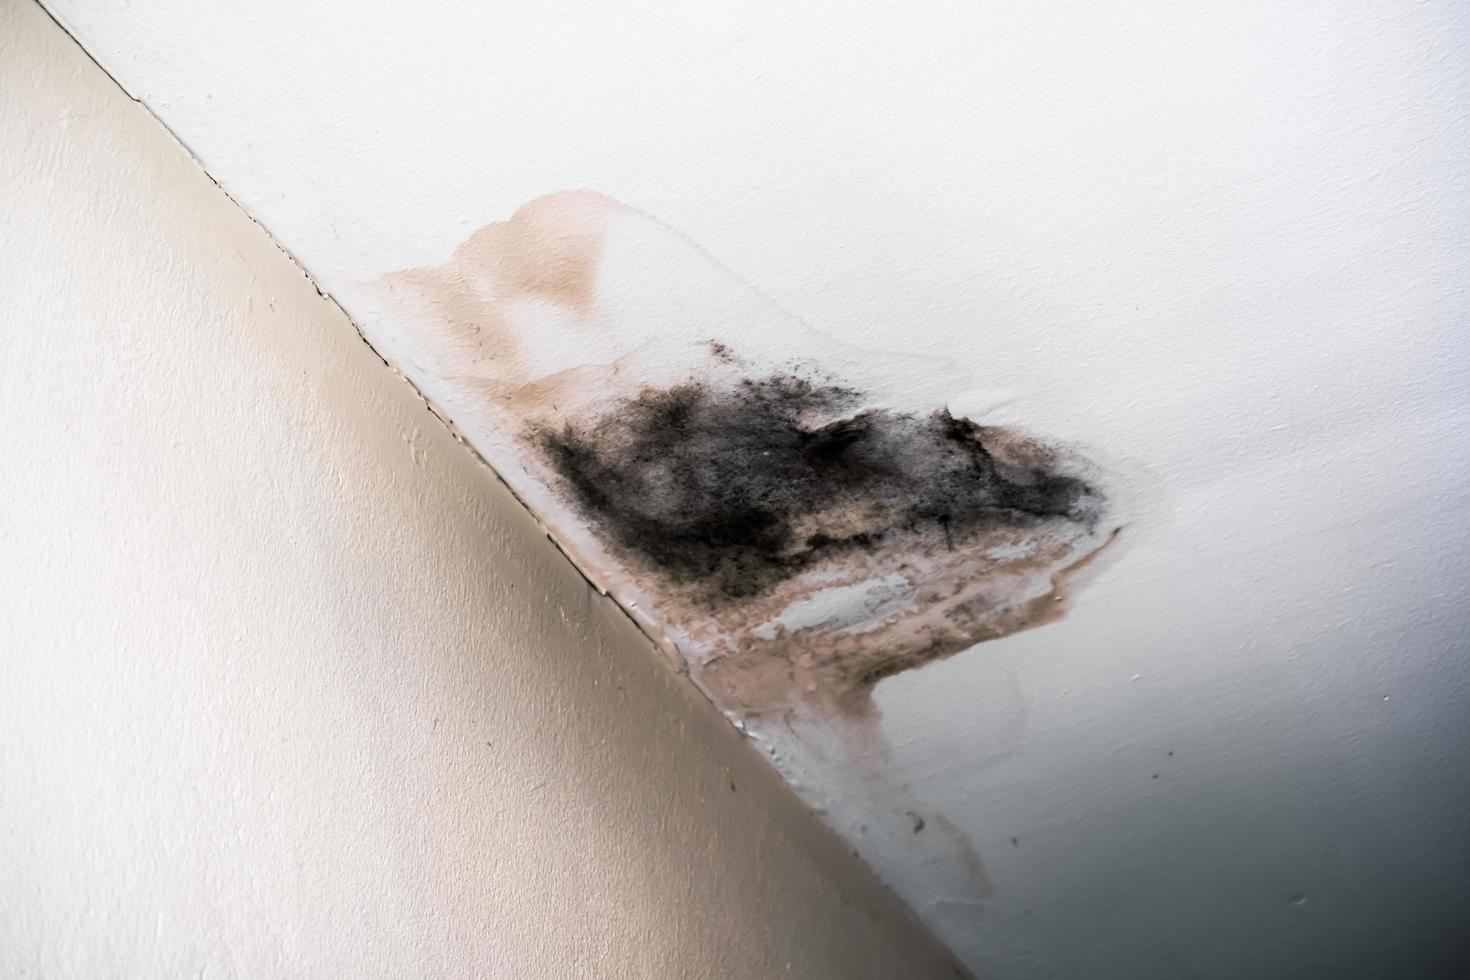 water beschadigd plafond dak en muur, lekkage bruin bekladden in een oud kantoor gebouw foto